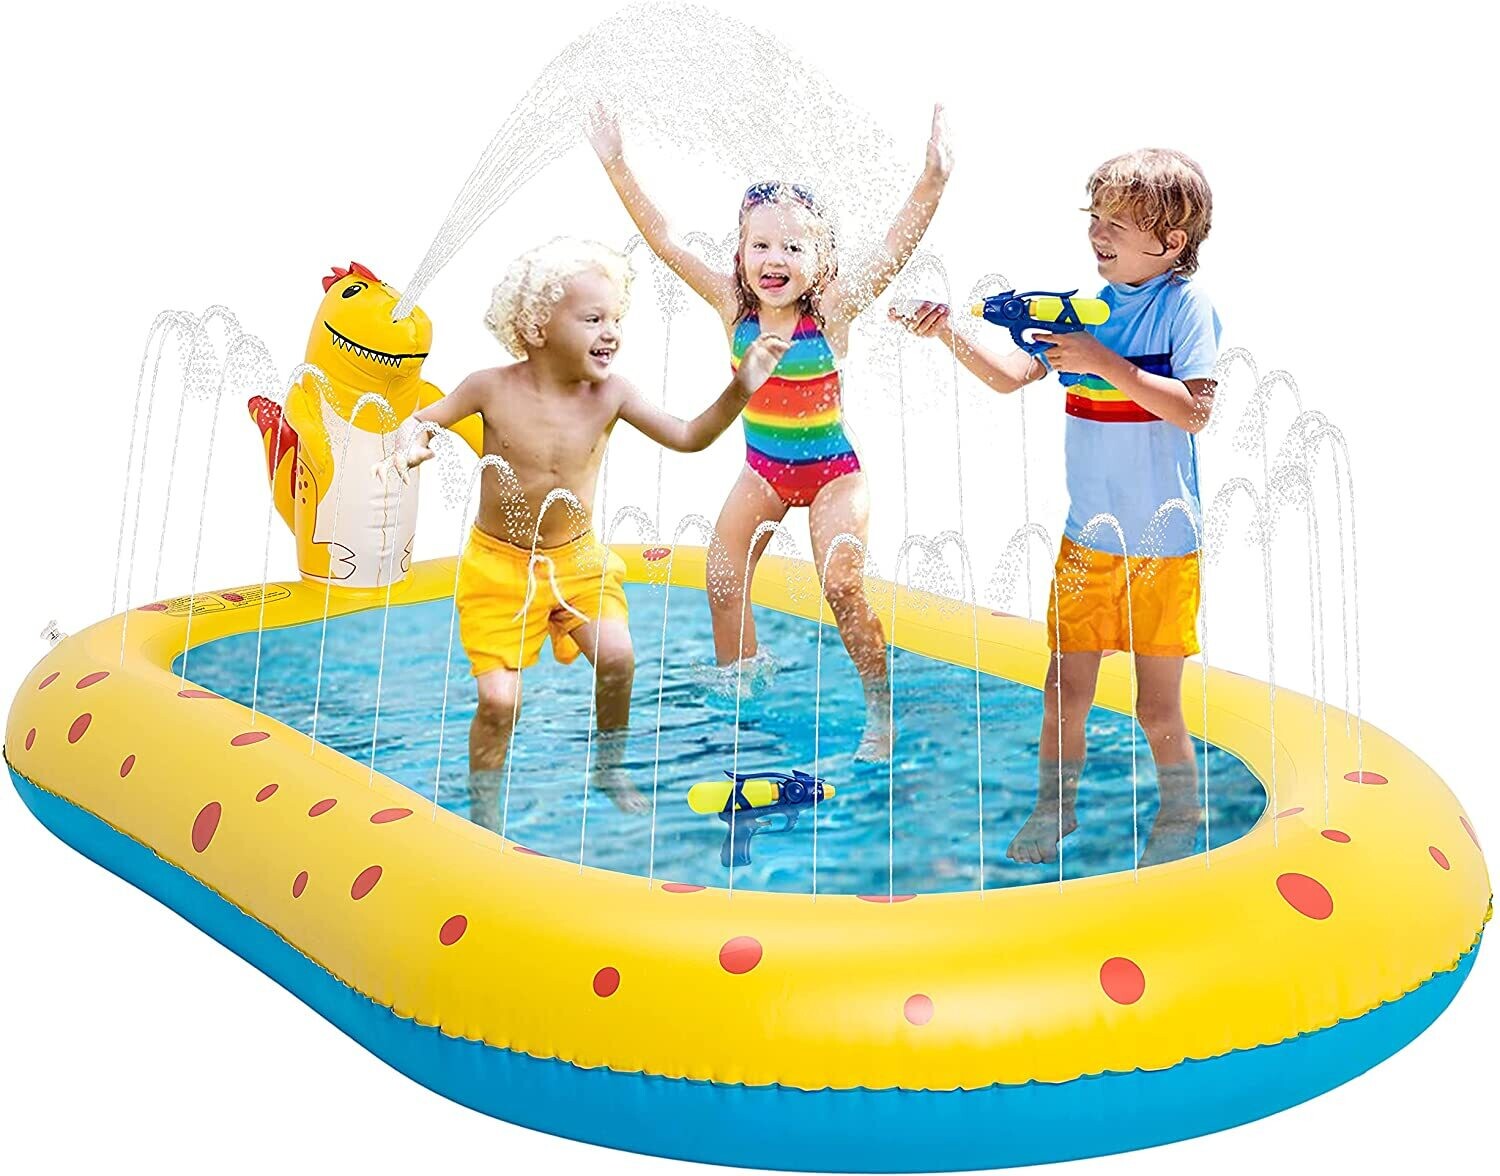 Splash Pad & Pool, Sprinkler Water Play Mat